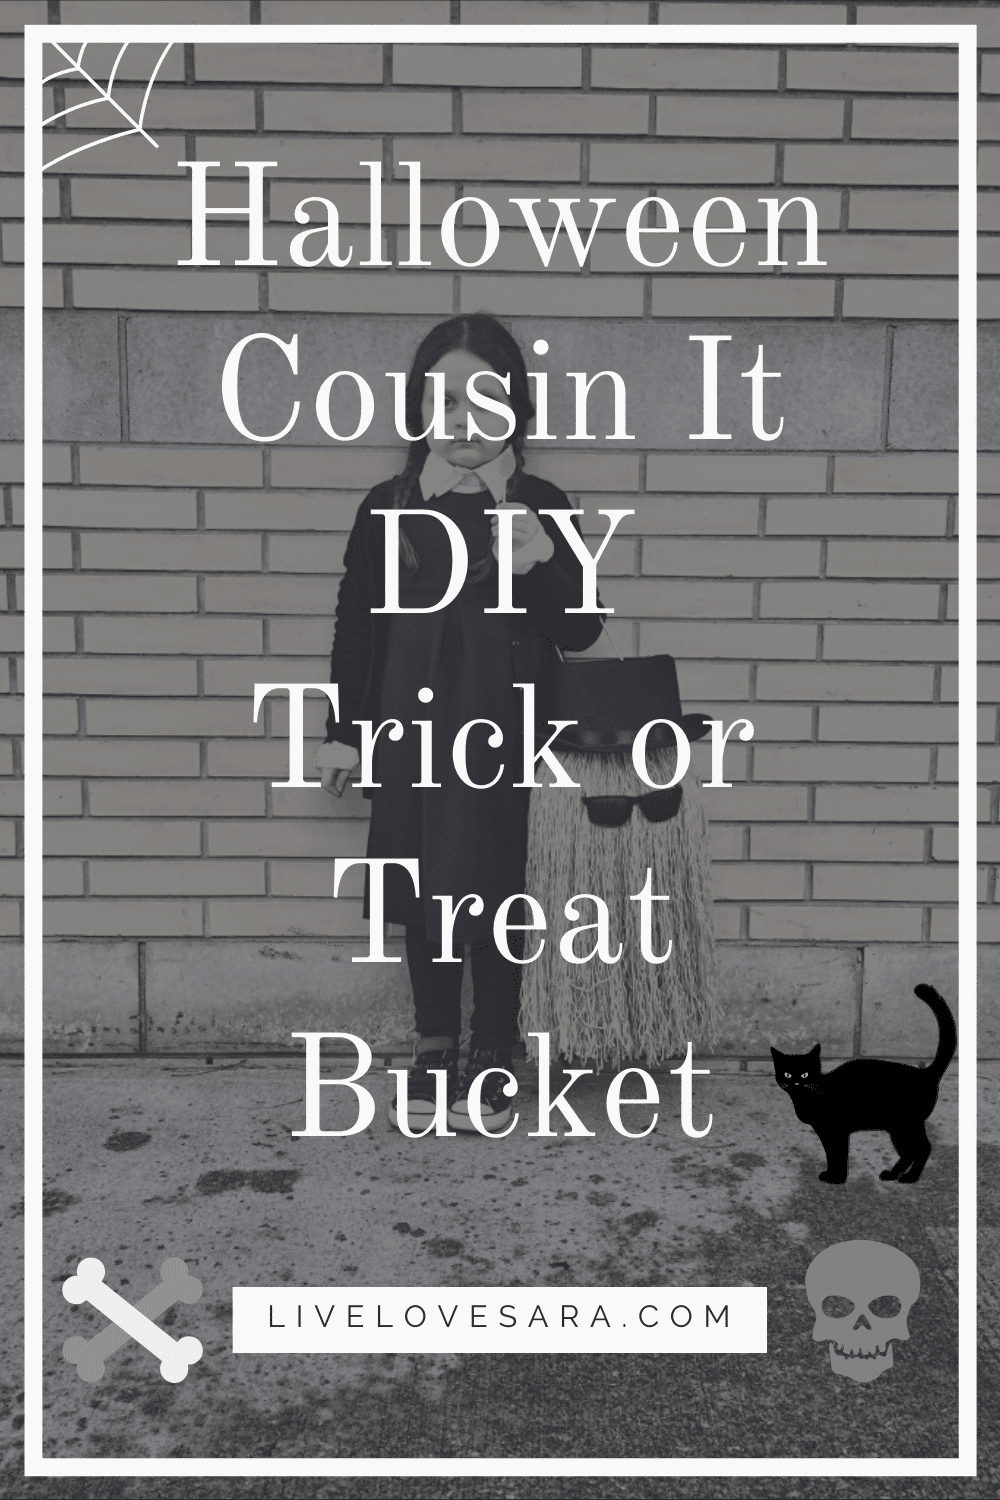 Halloween Cousin It Trick or Treat Bucket DIY